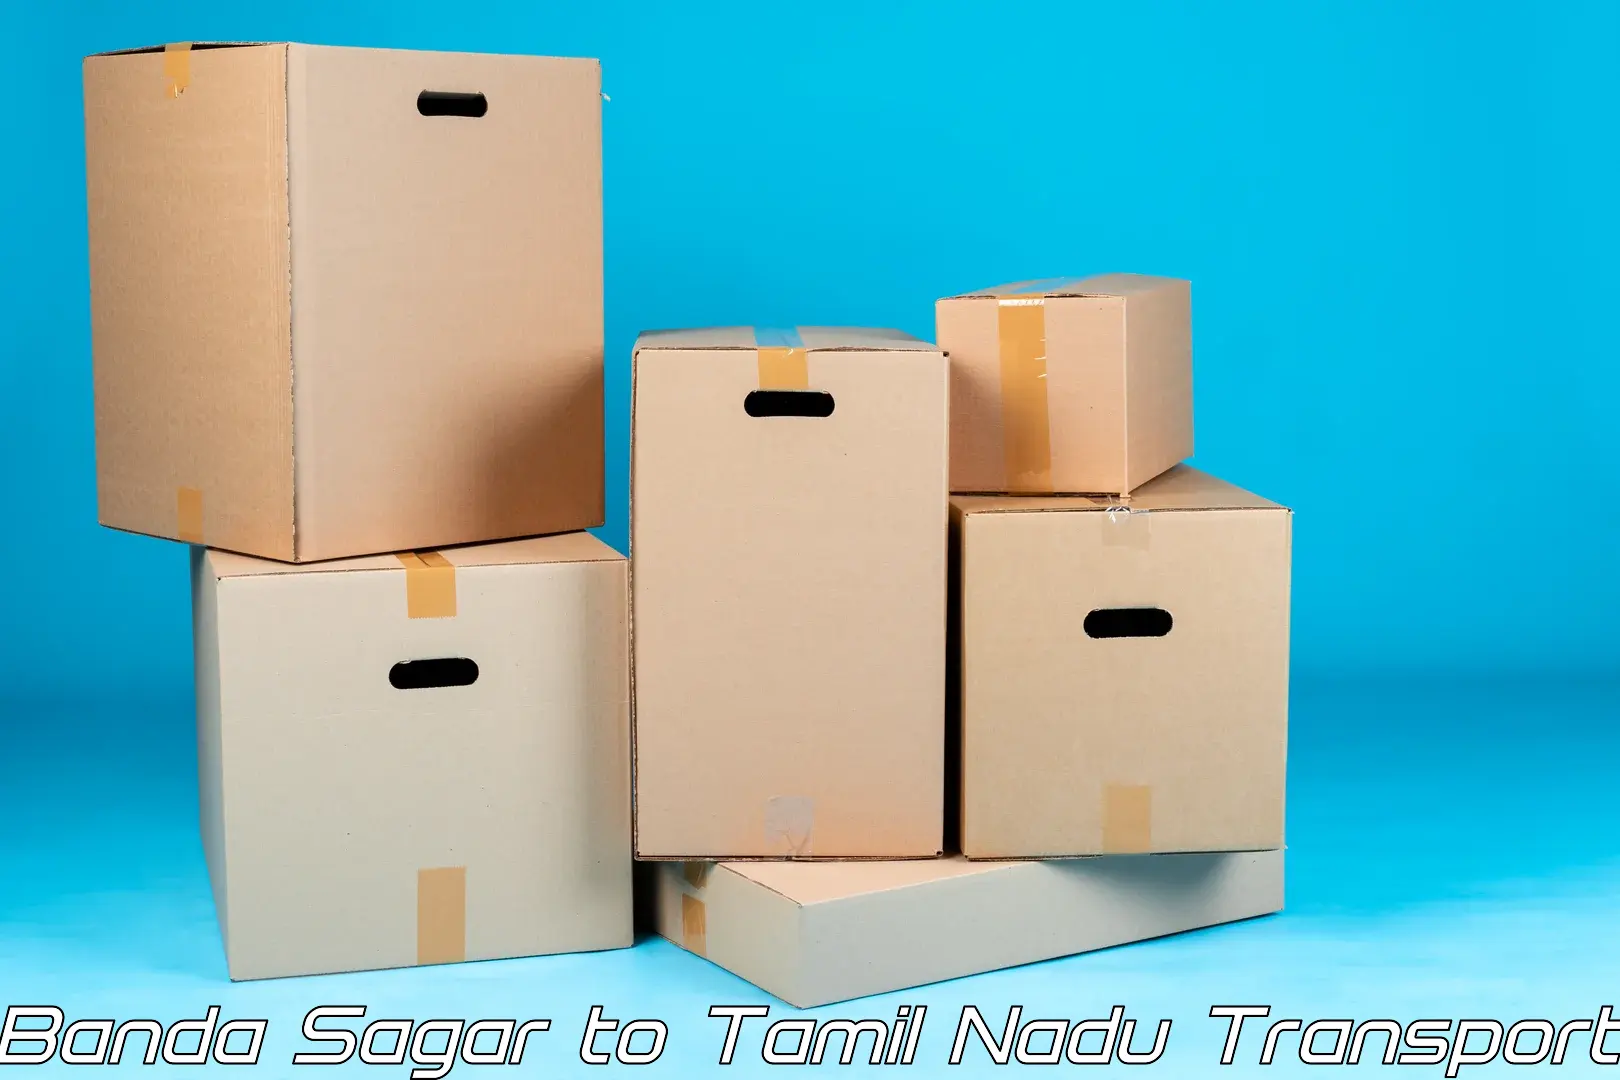 Pick up transport service Banda Sagar to Thiruthuraipoondi